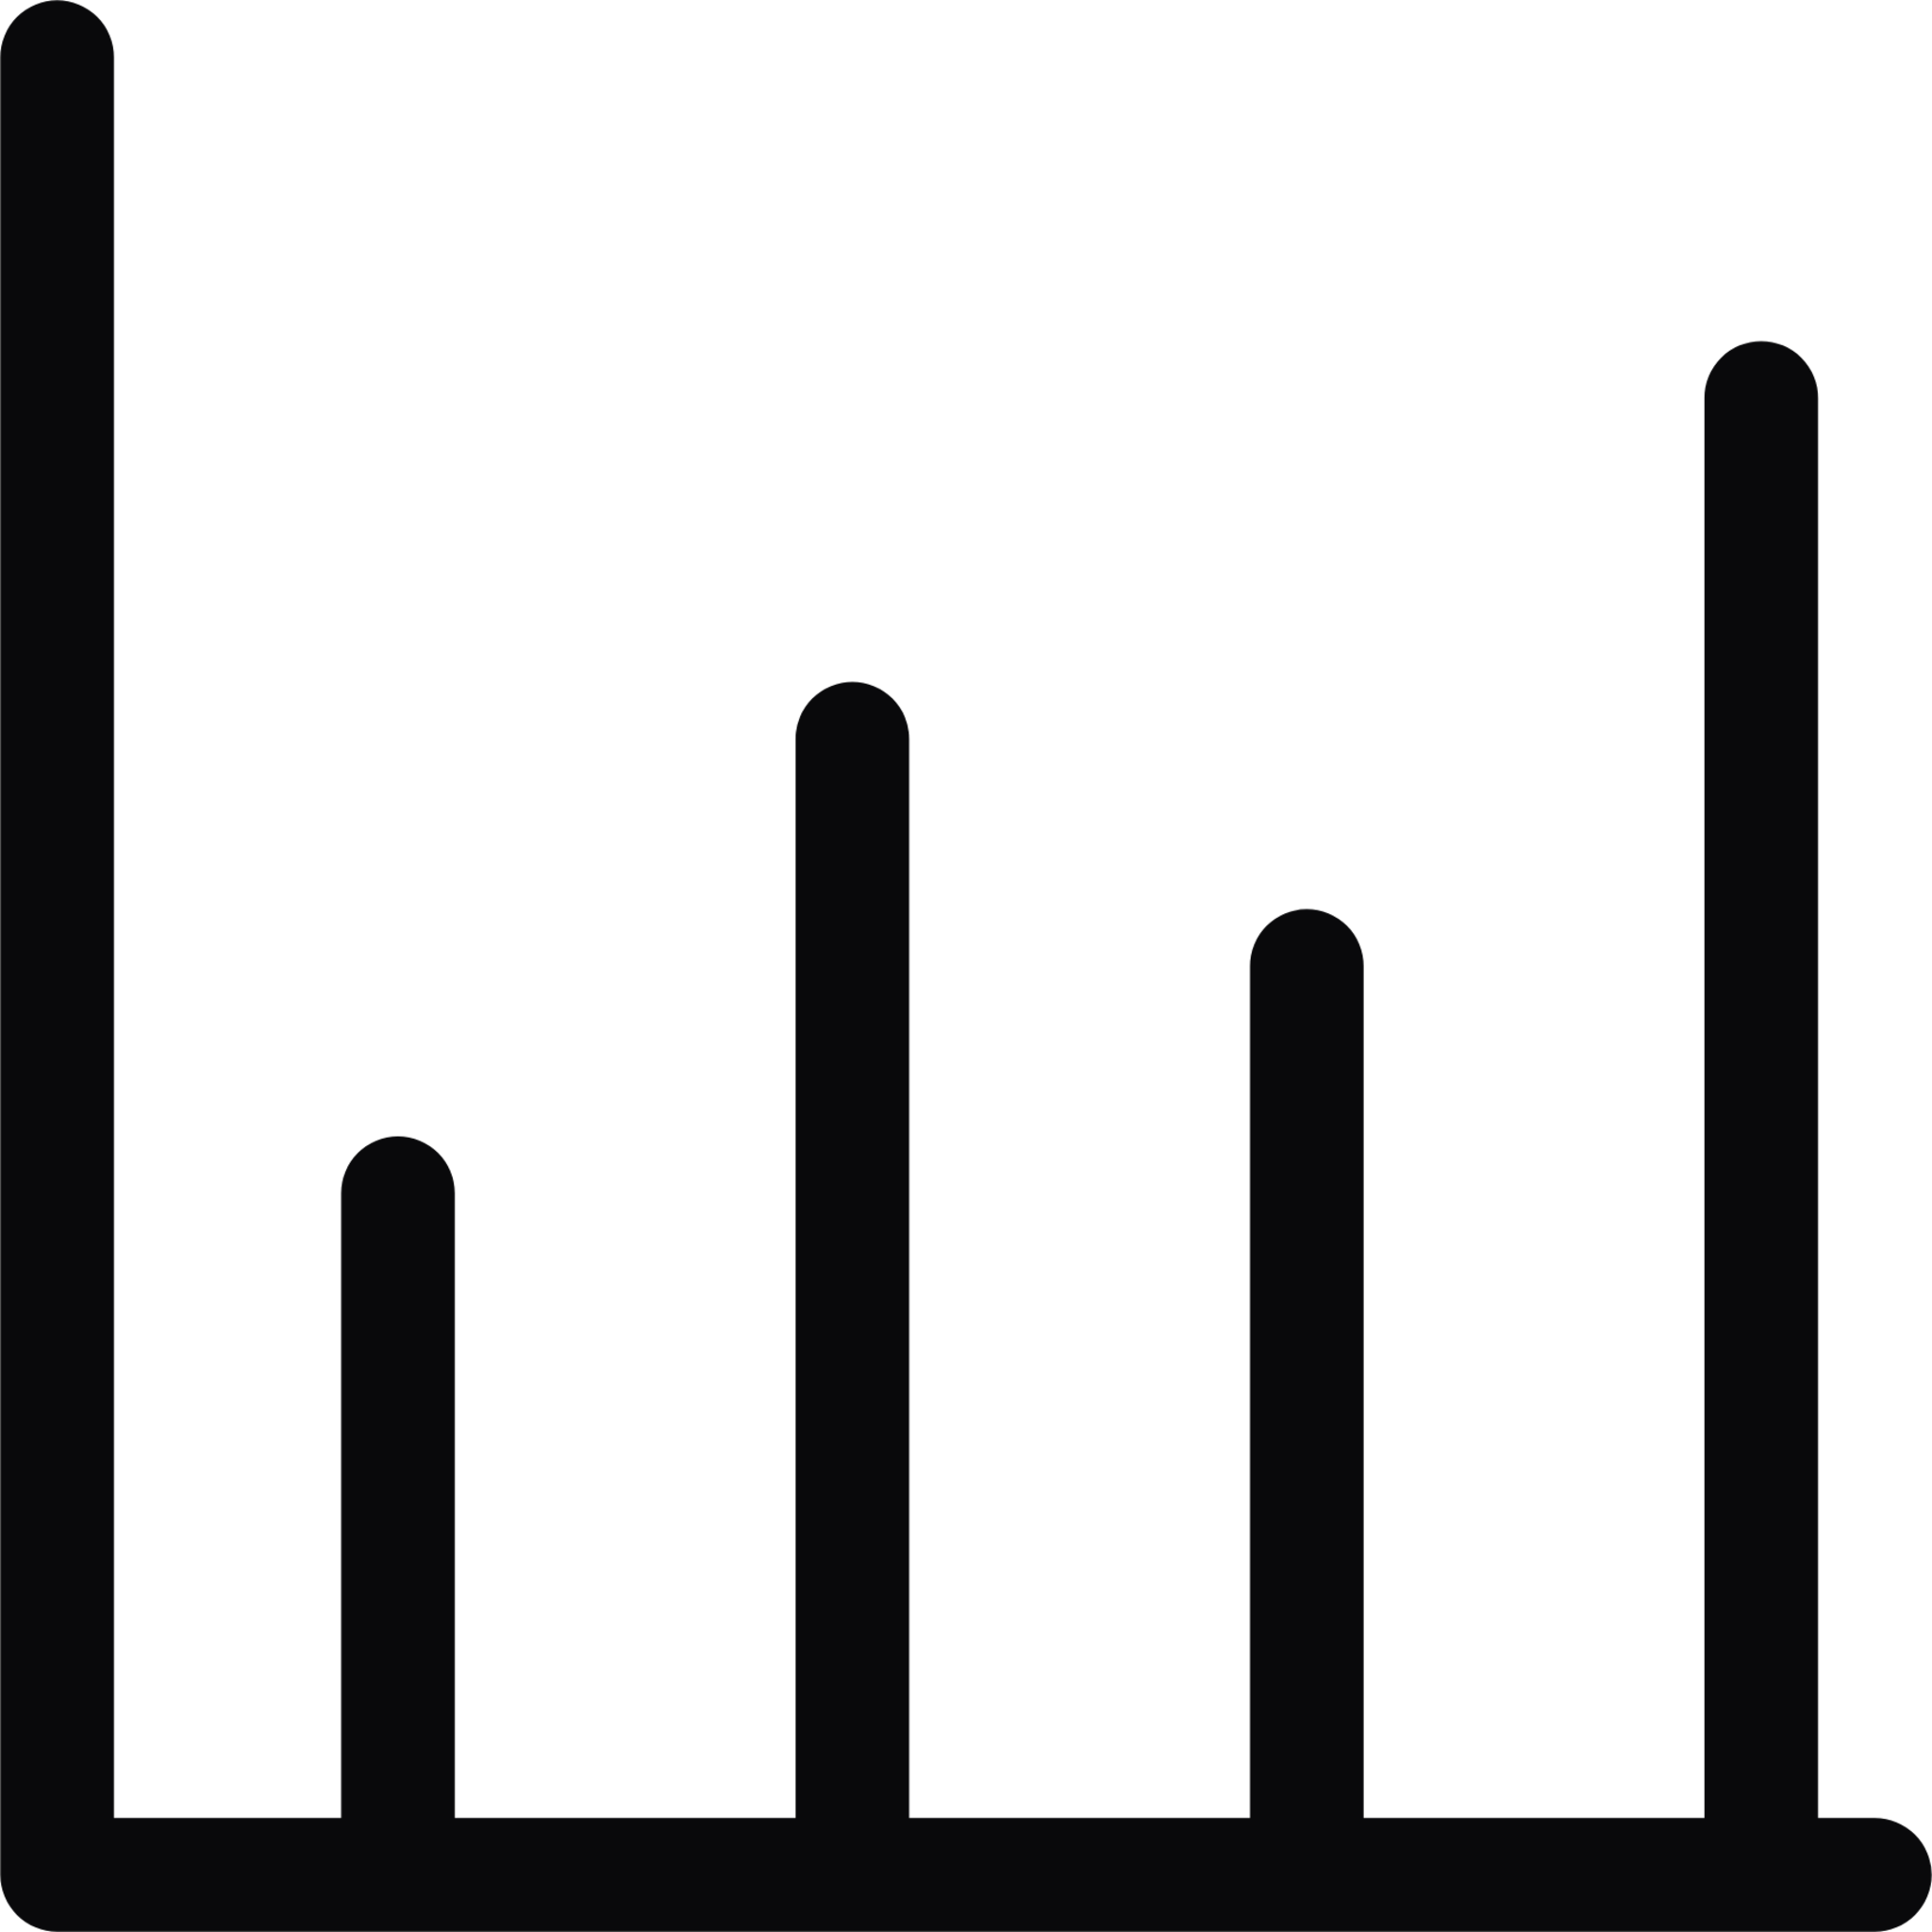 bar graph icon